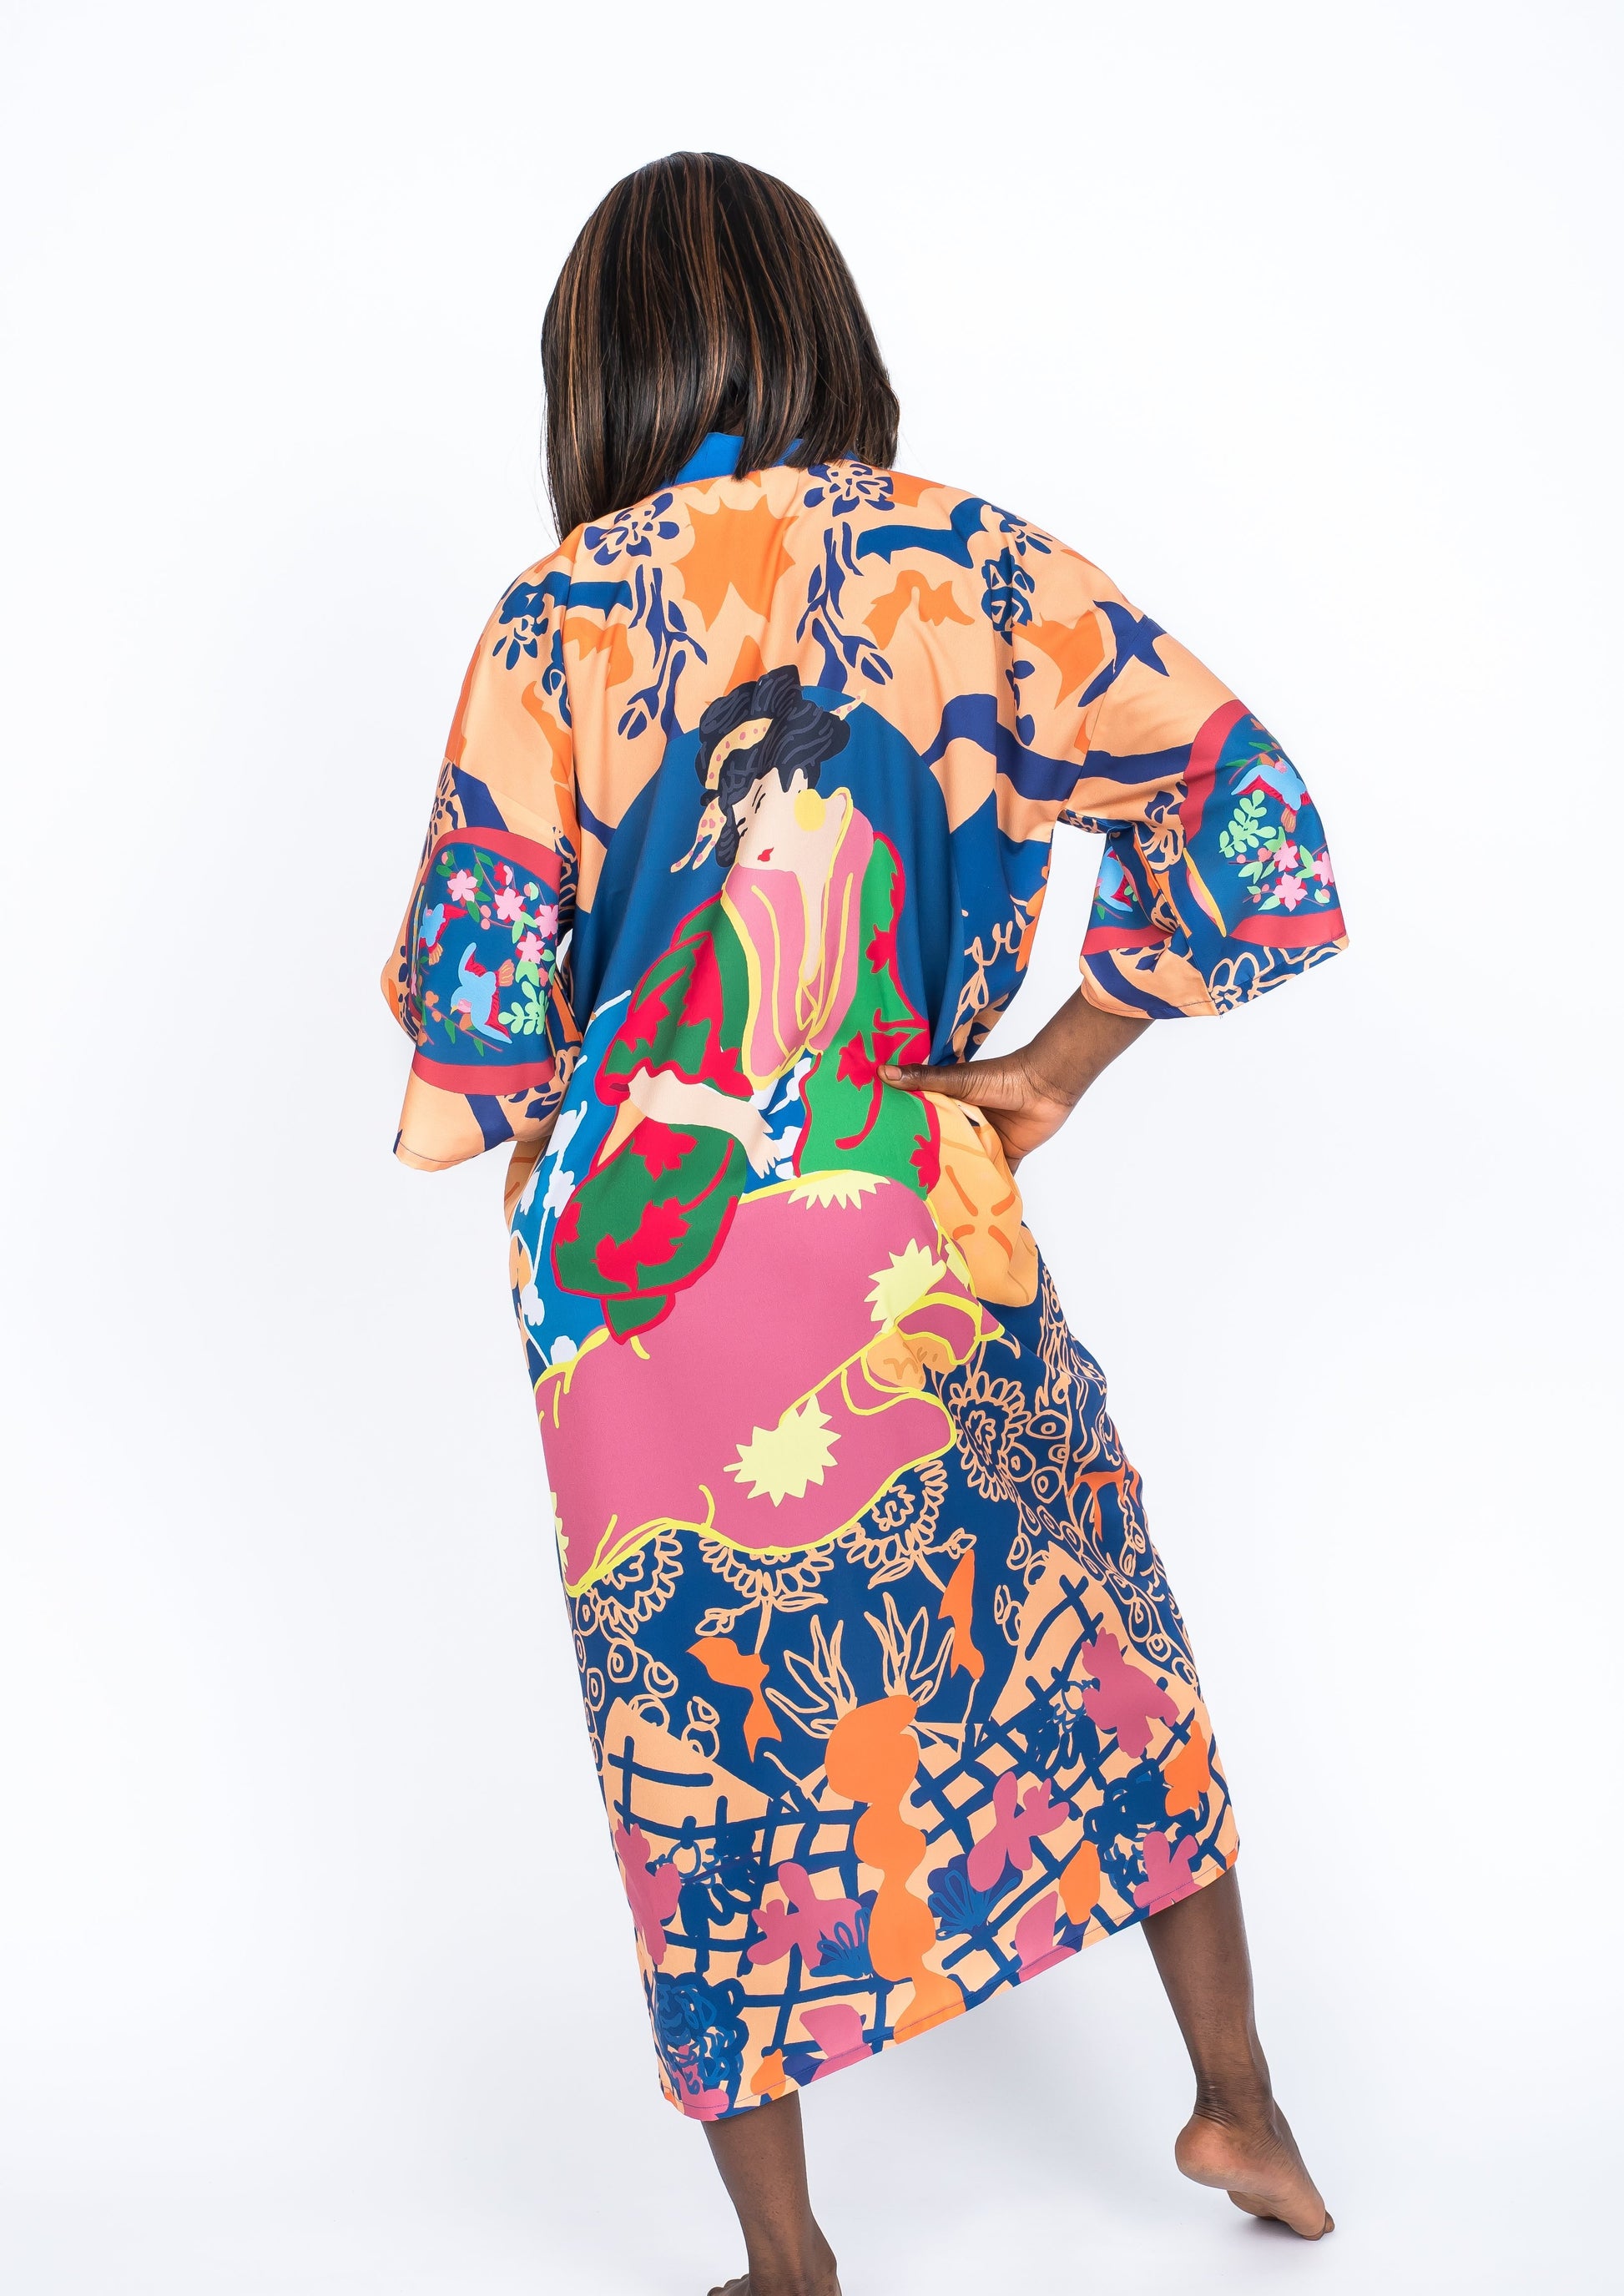 Silk Kimono Postales by Santiago Paredes - Ms.Meri Mak